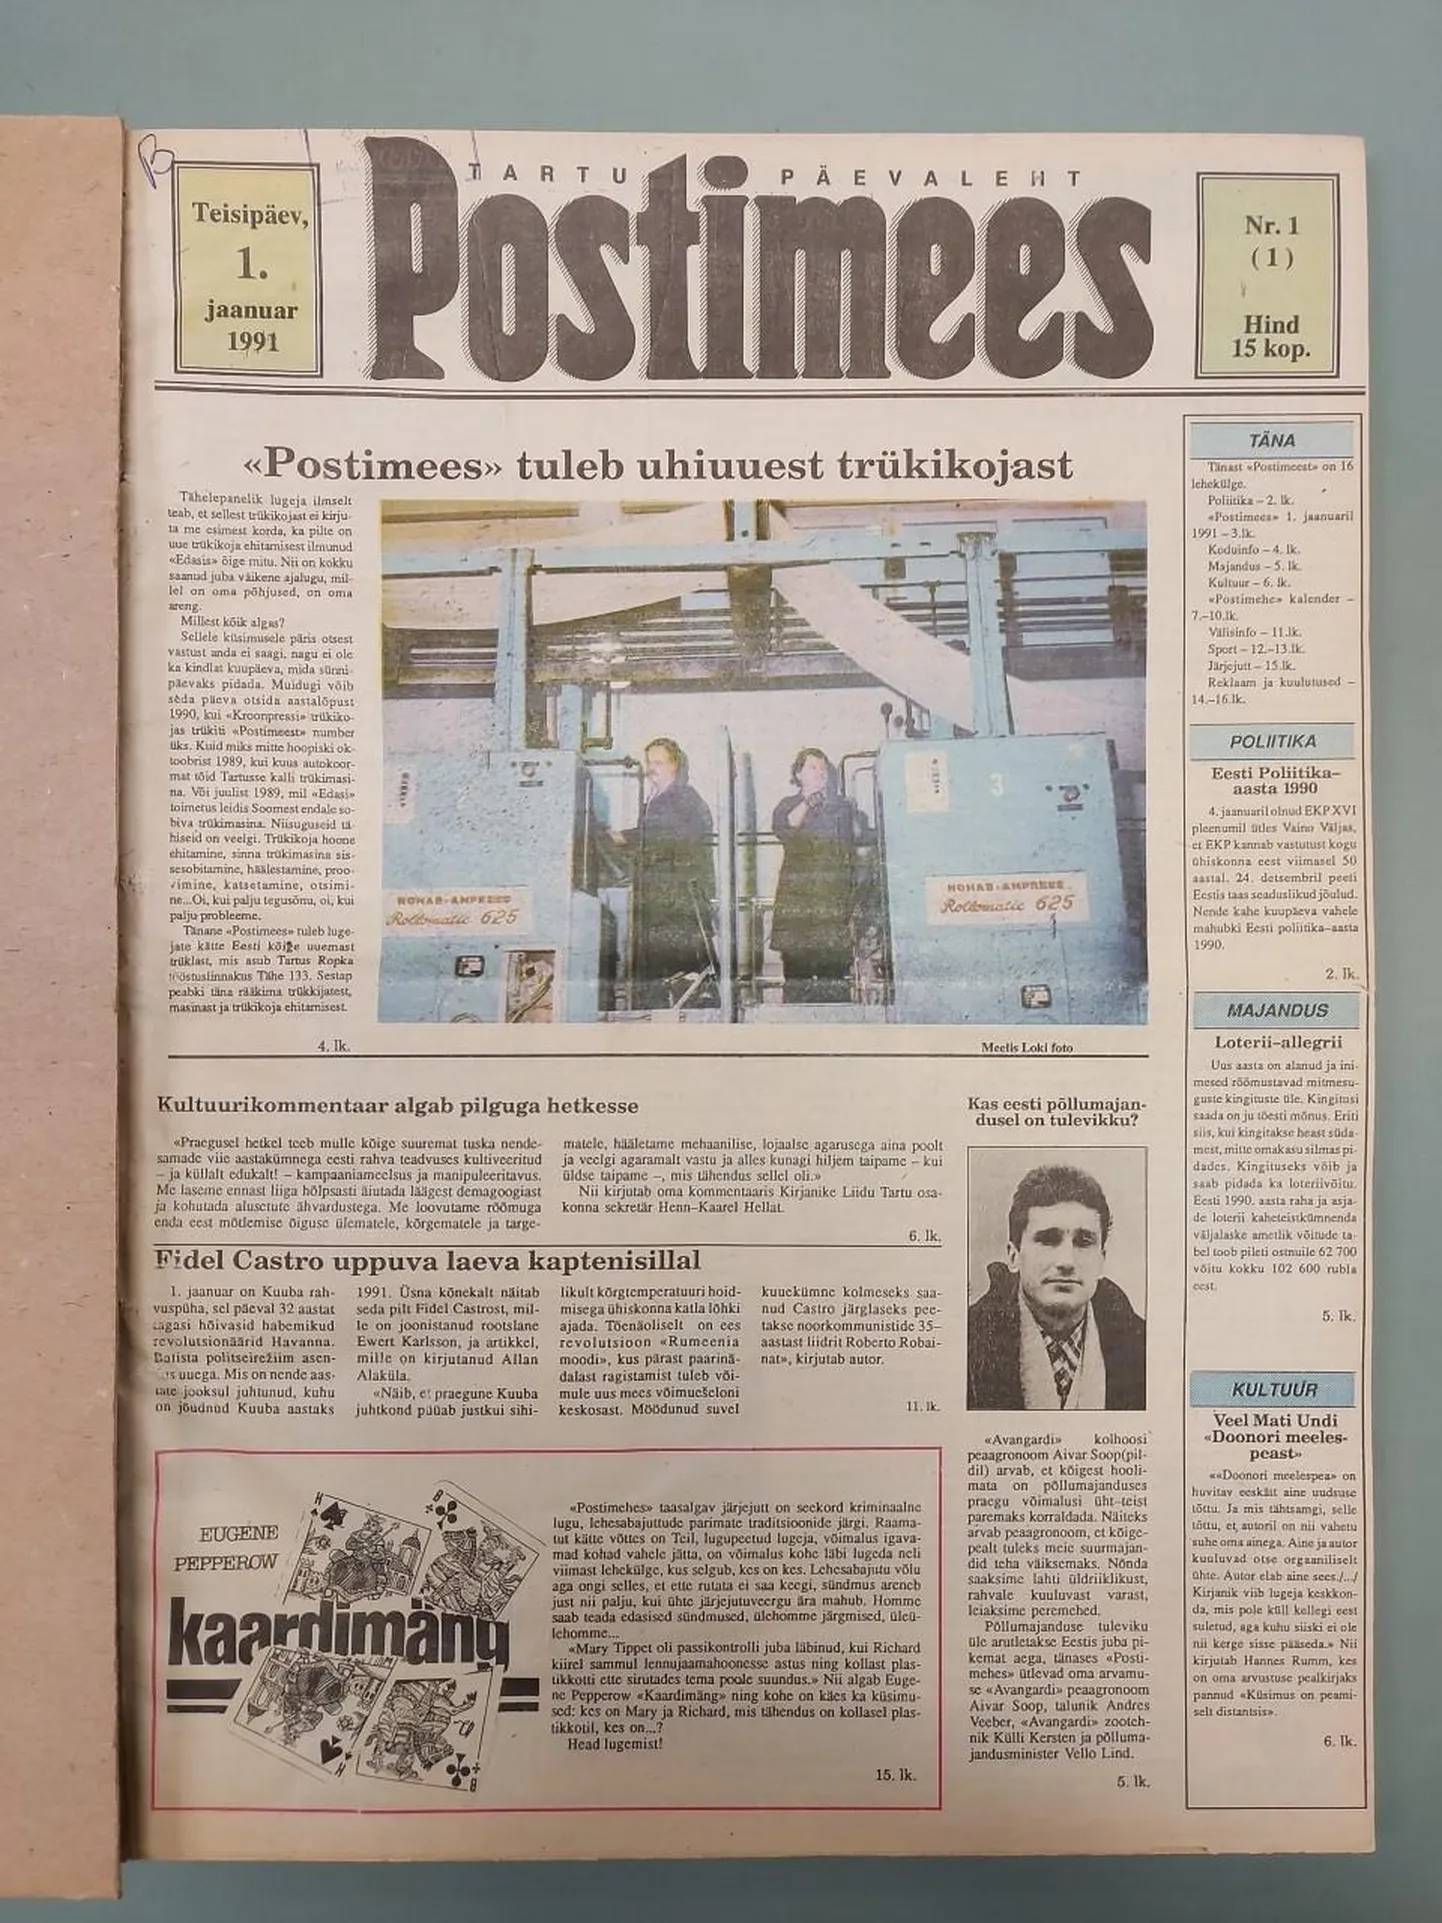 1. jaanuaril 1991 ilmunud Postimehe esikülg.